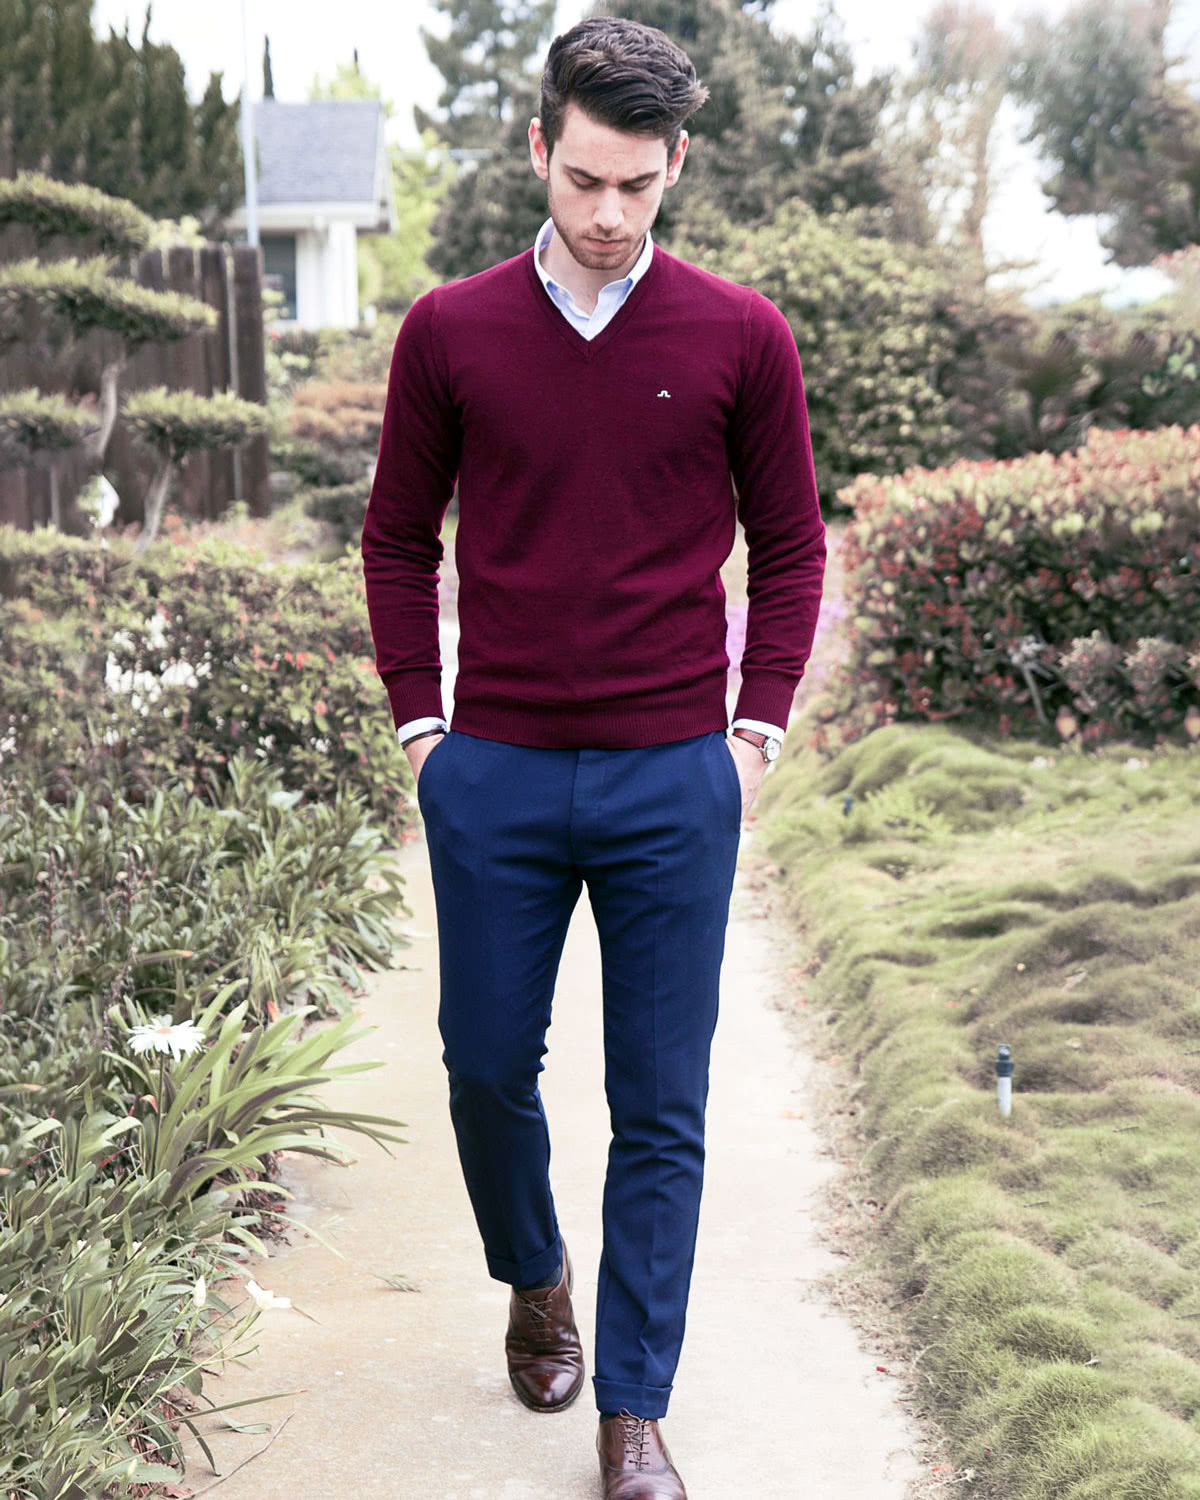 smart casual dress code men knitwear style - Luxe Digital